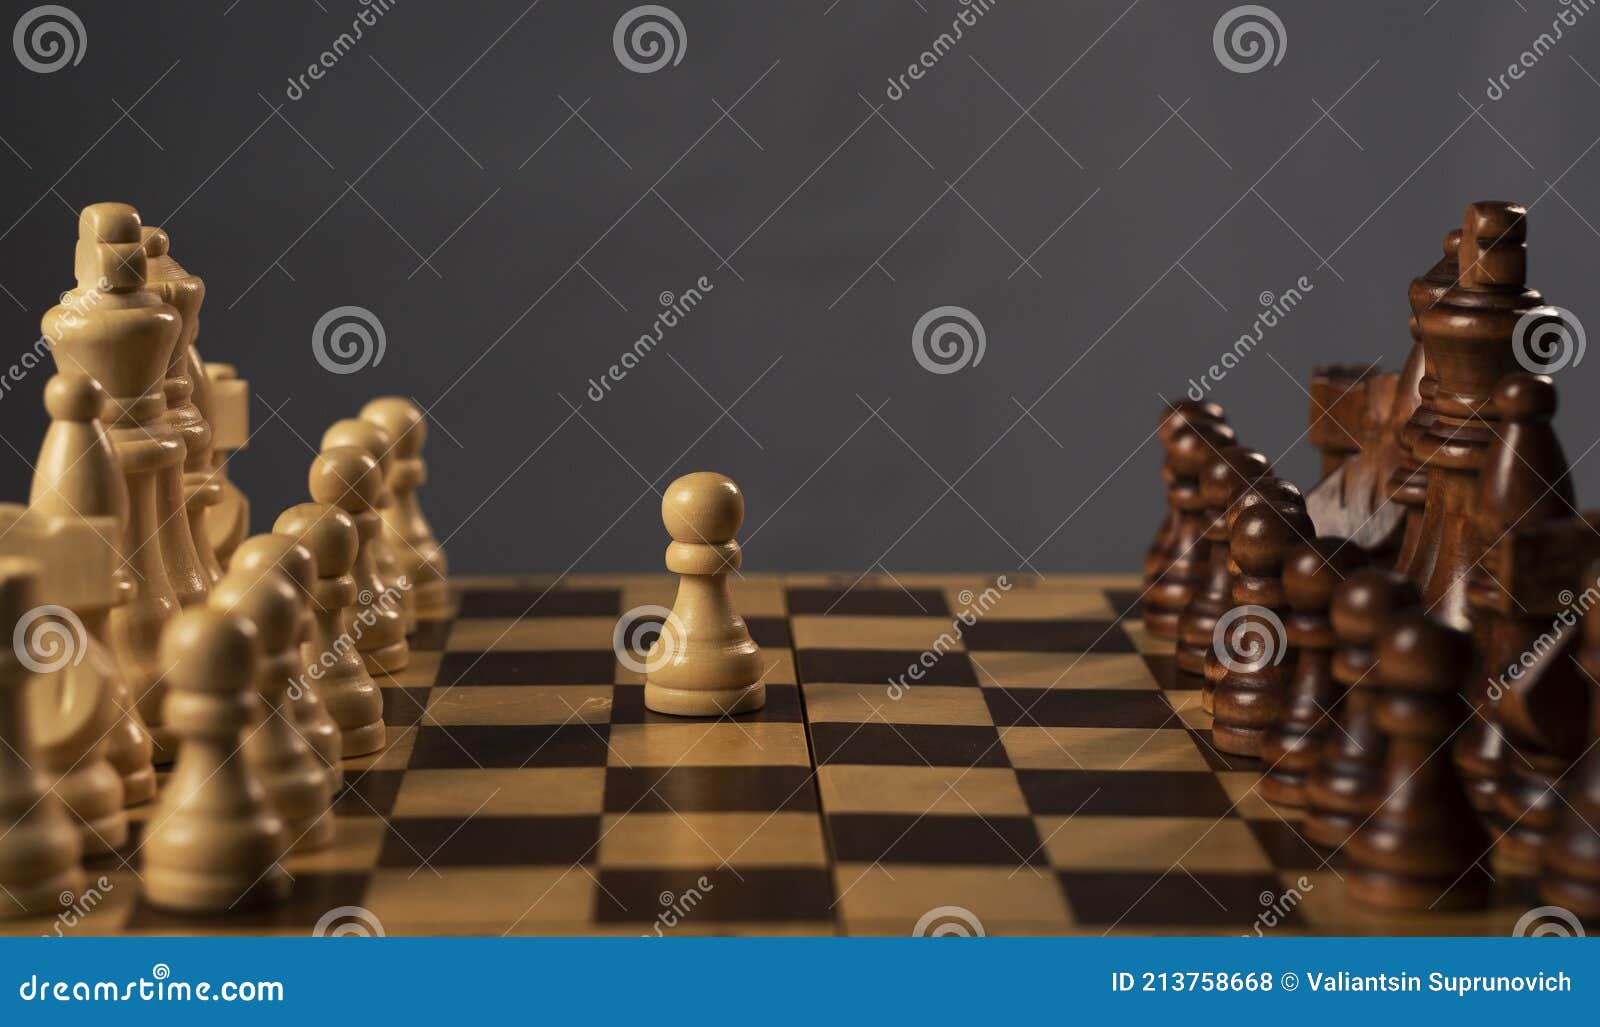 Mão masculina se movendo peão no tabuleiro de xadrez, começando o jogo.  fazendo o conceito de decisão de negócios.